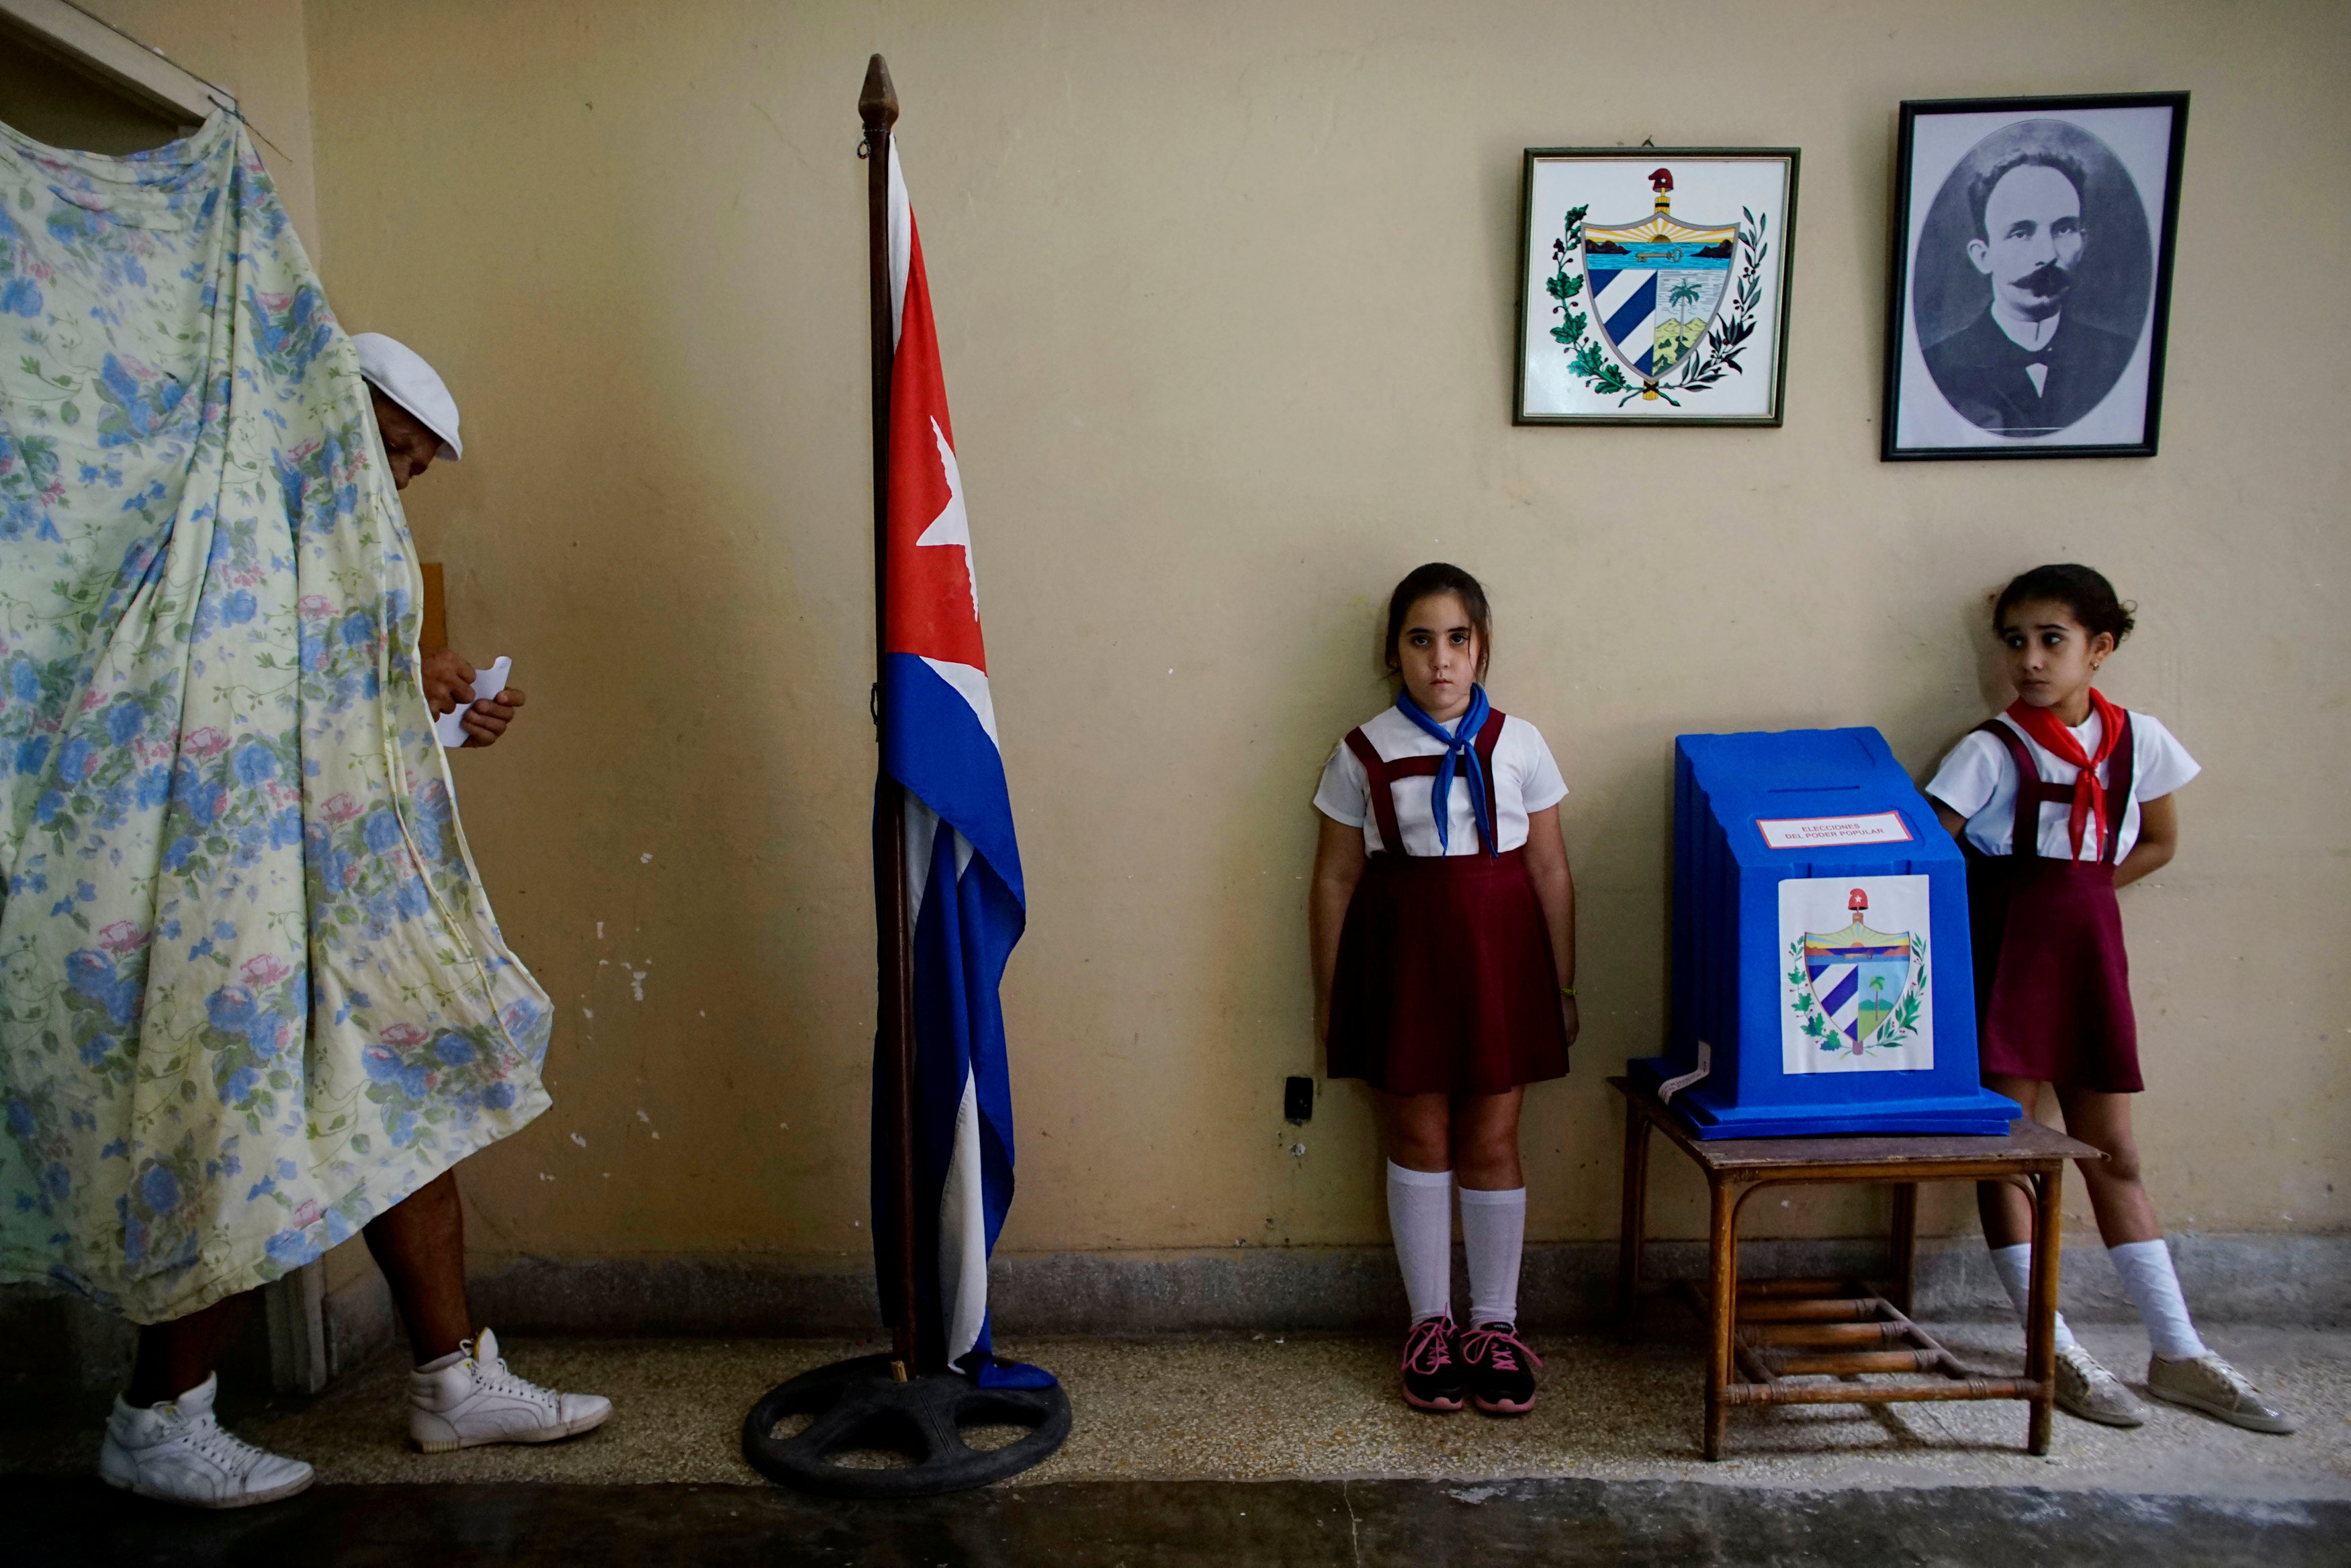 Un votante camina para emitir su voto en un colegio electoral en La Habana, Cuba, 26 de noviembre de 2017 (REUTERS)